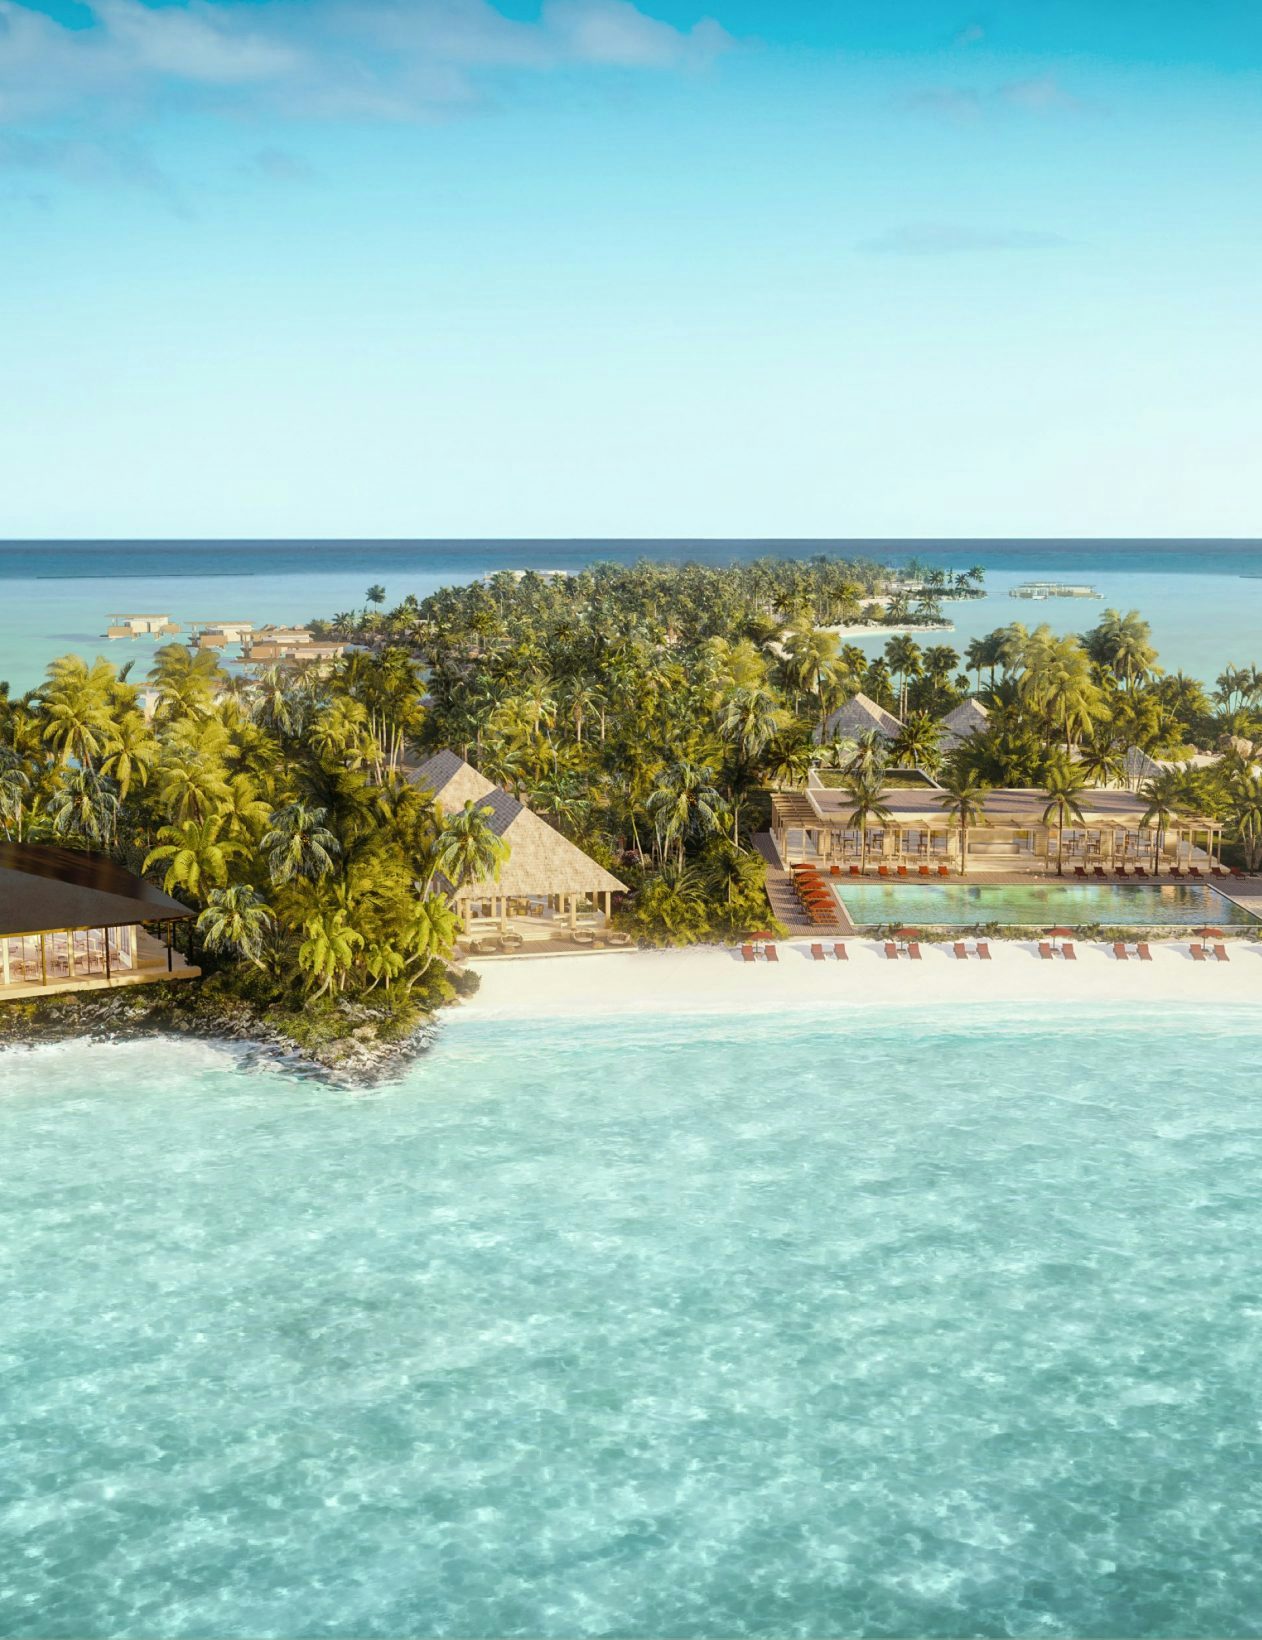 Bulgari annonce l’ouverture d’un nouveau Resort aux Maldives